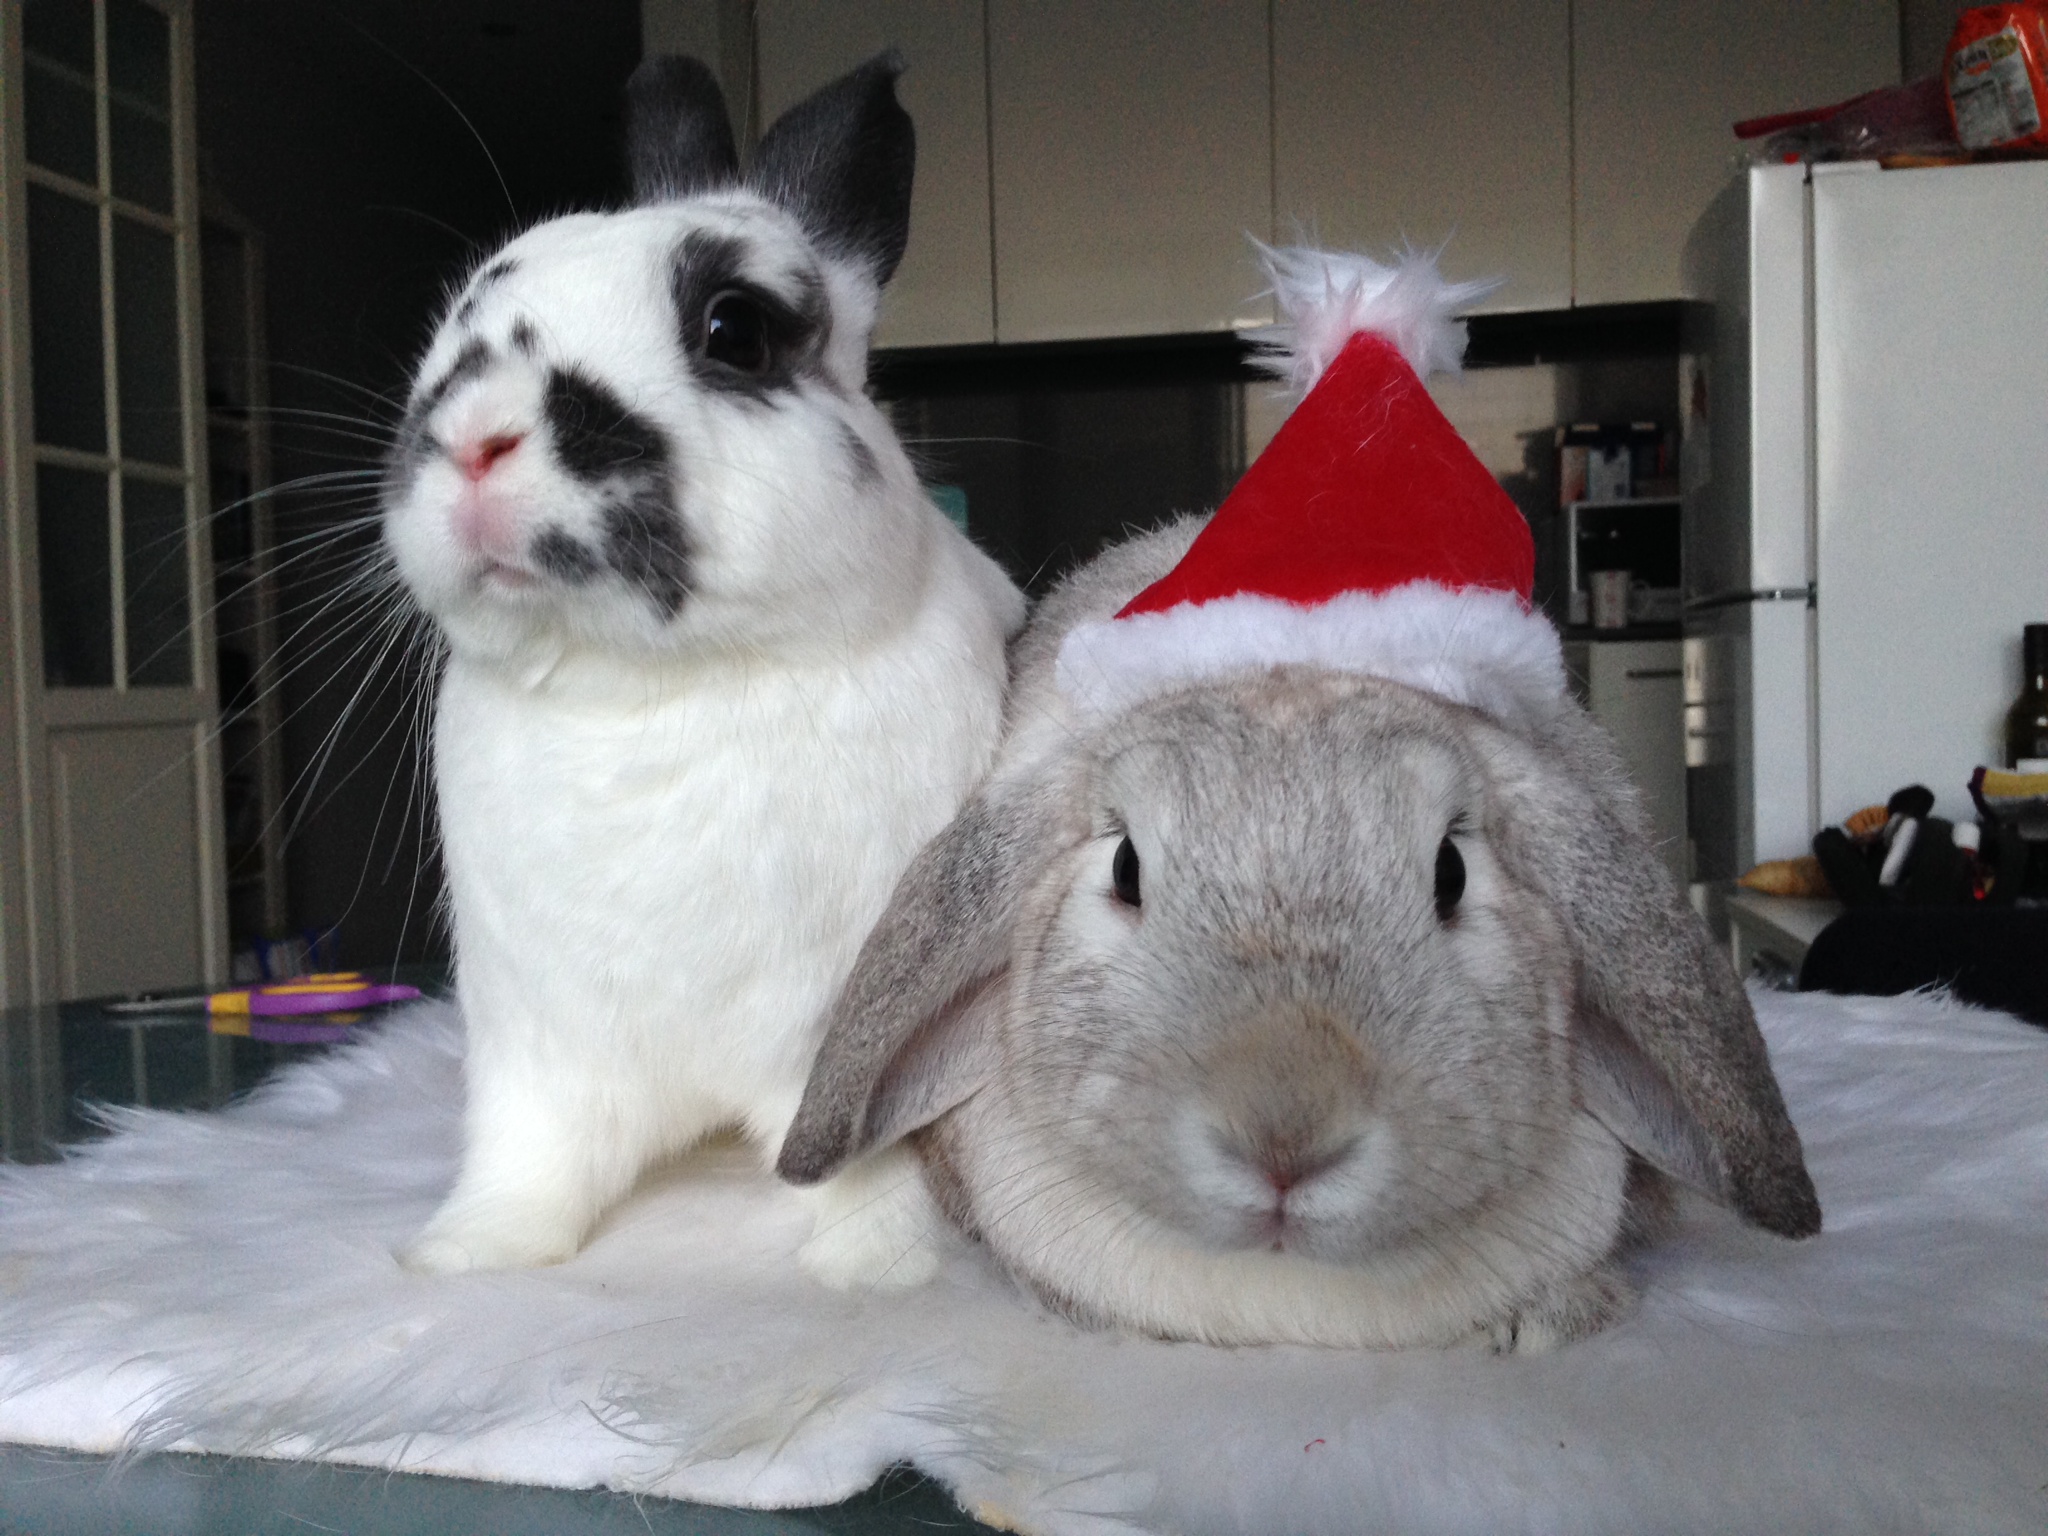 Diva Bunny Doesn't Share the Santa Hat 2